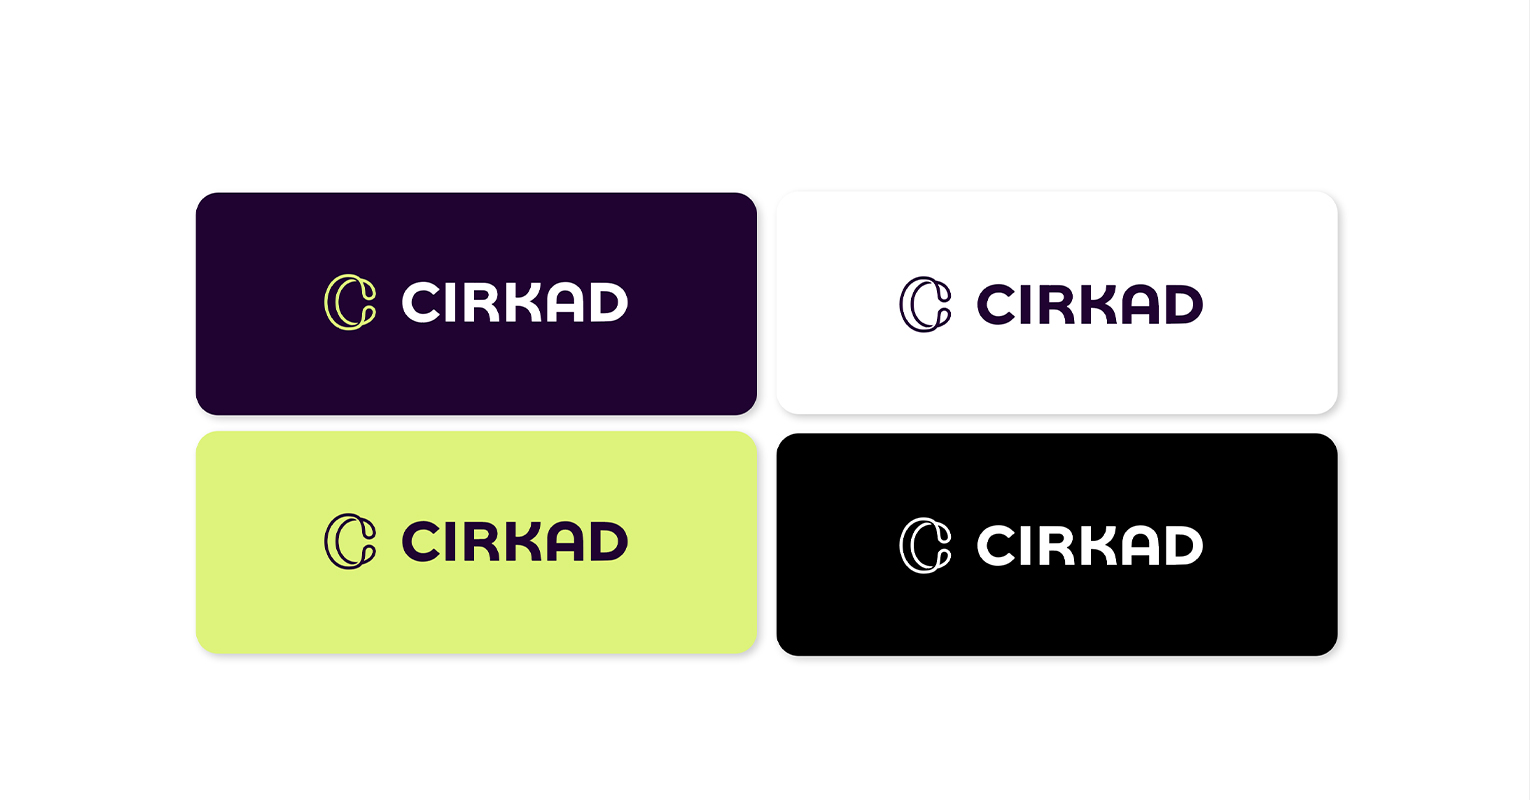 Les supports de communications réalisés pour Cirkad